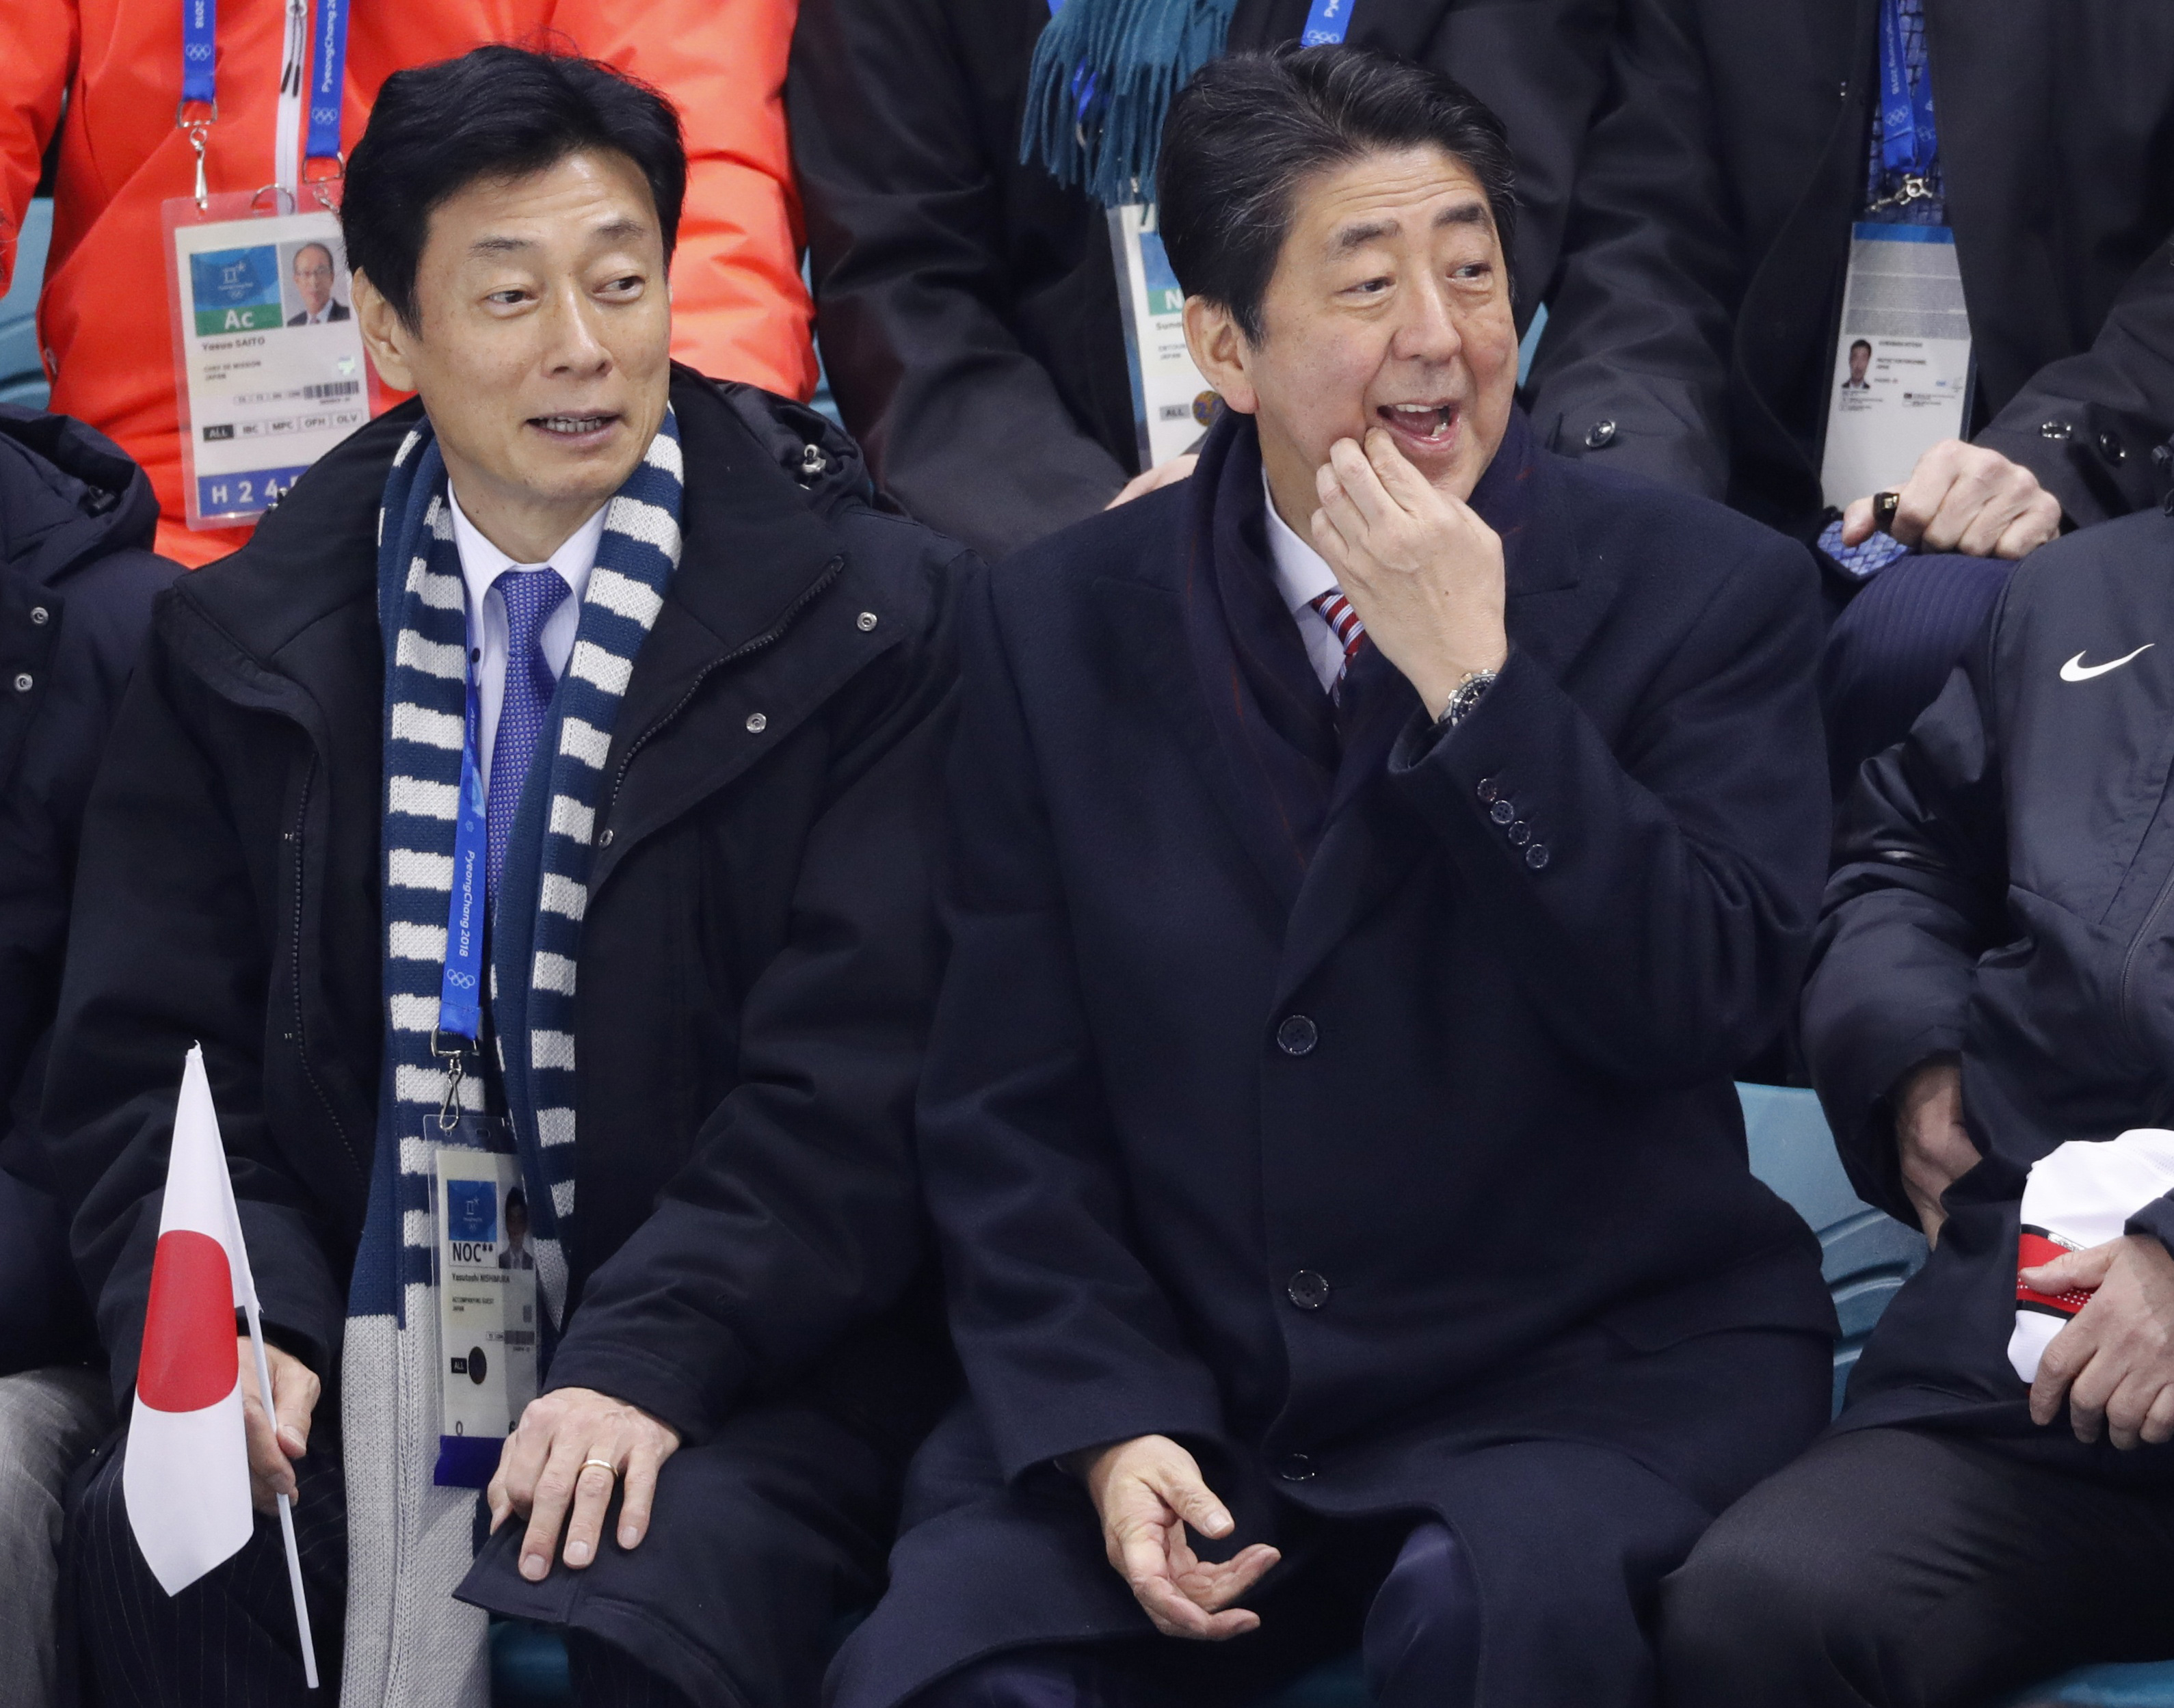 رئيس الوزراء اليابانى يشاهد منافسة رياضية لليابان والسويد